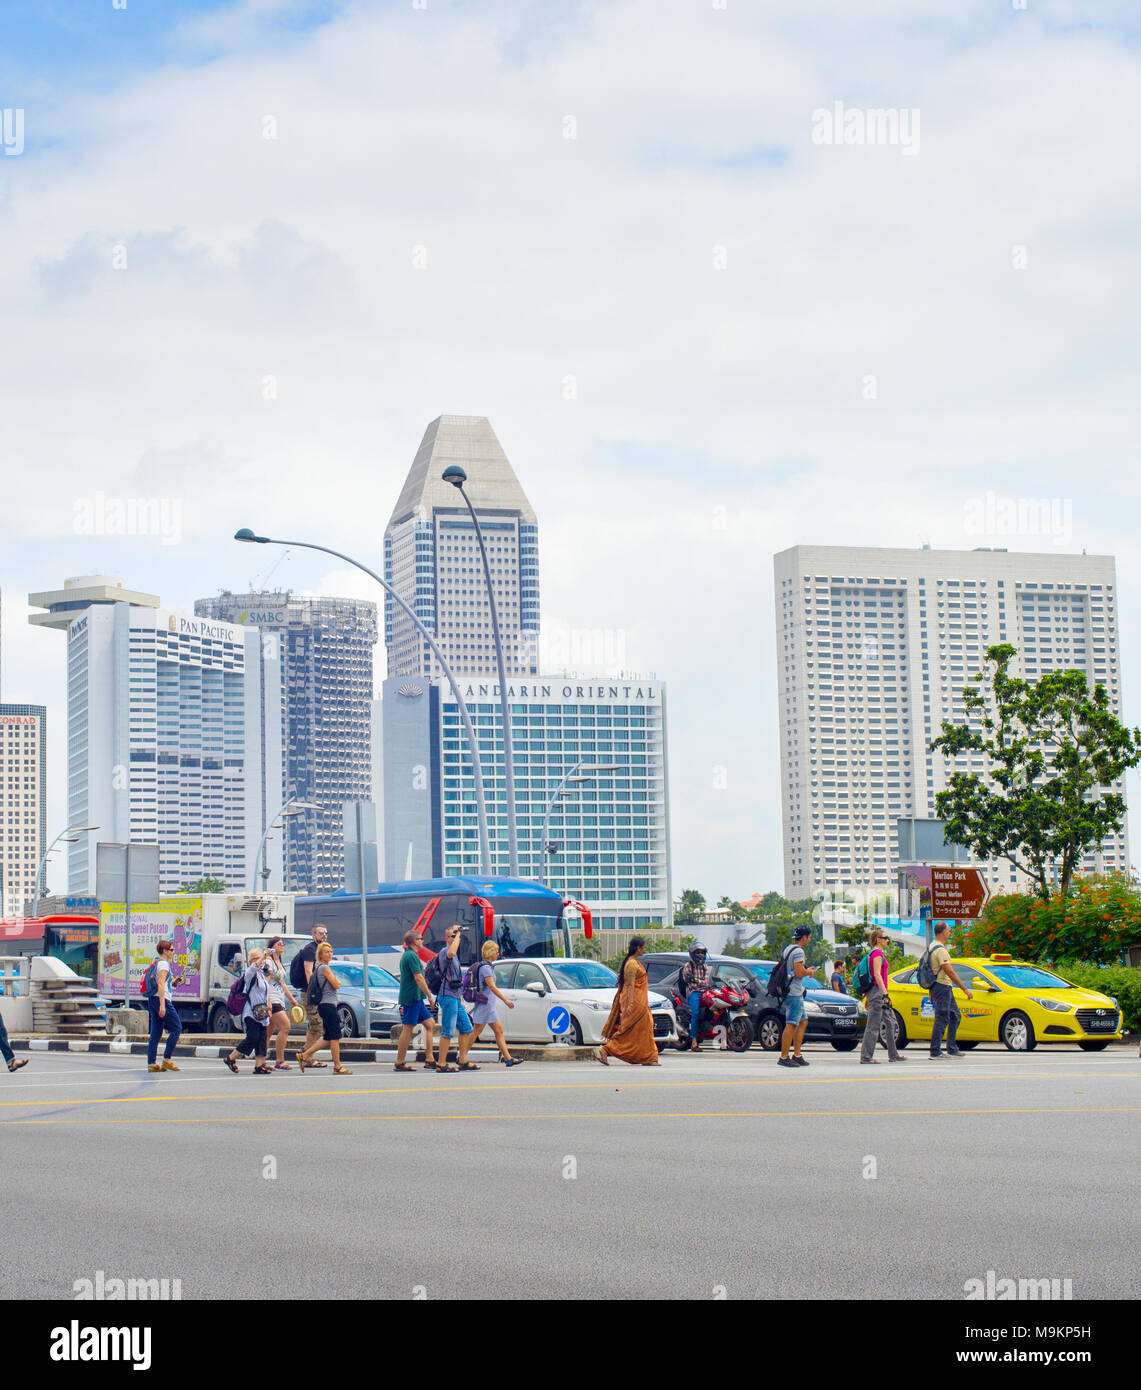 Singapur - Jan 14, 2017: Überqueren der Straße in Singapur. Singapur ist ein globaler Handel, Finanzen und Transport Hub Stockfoto